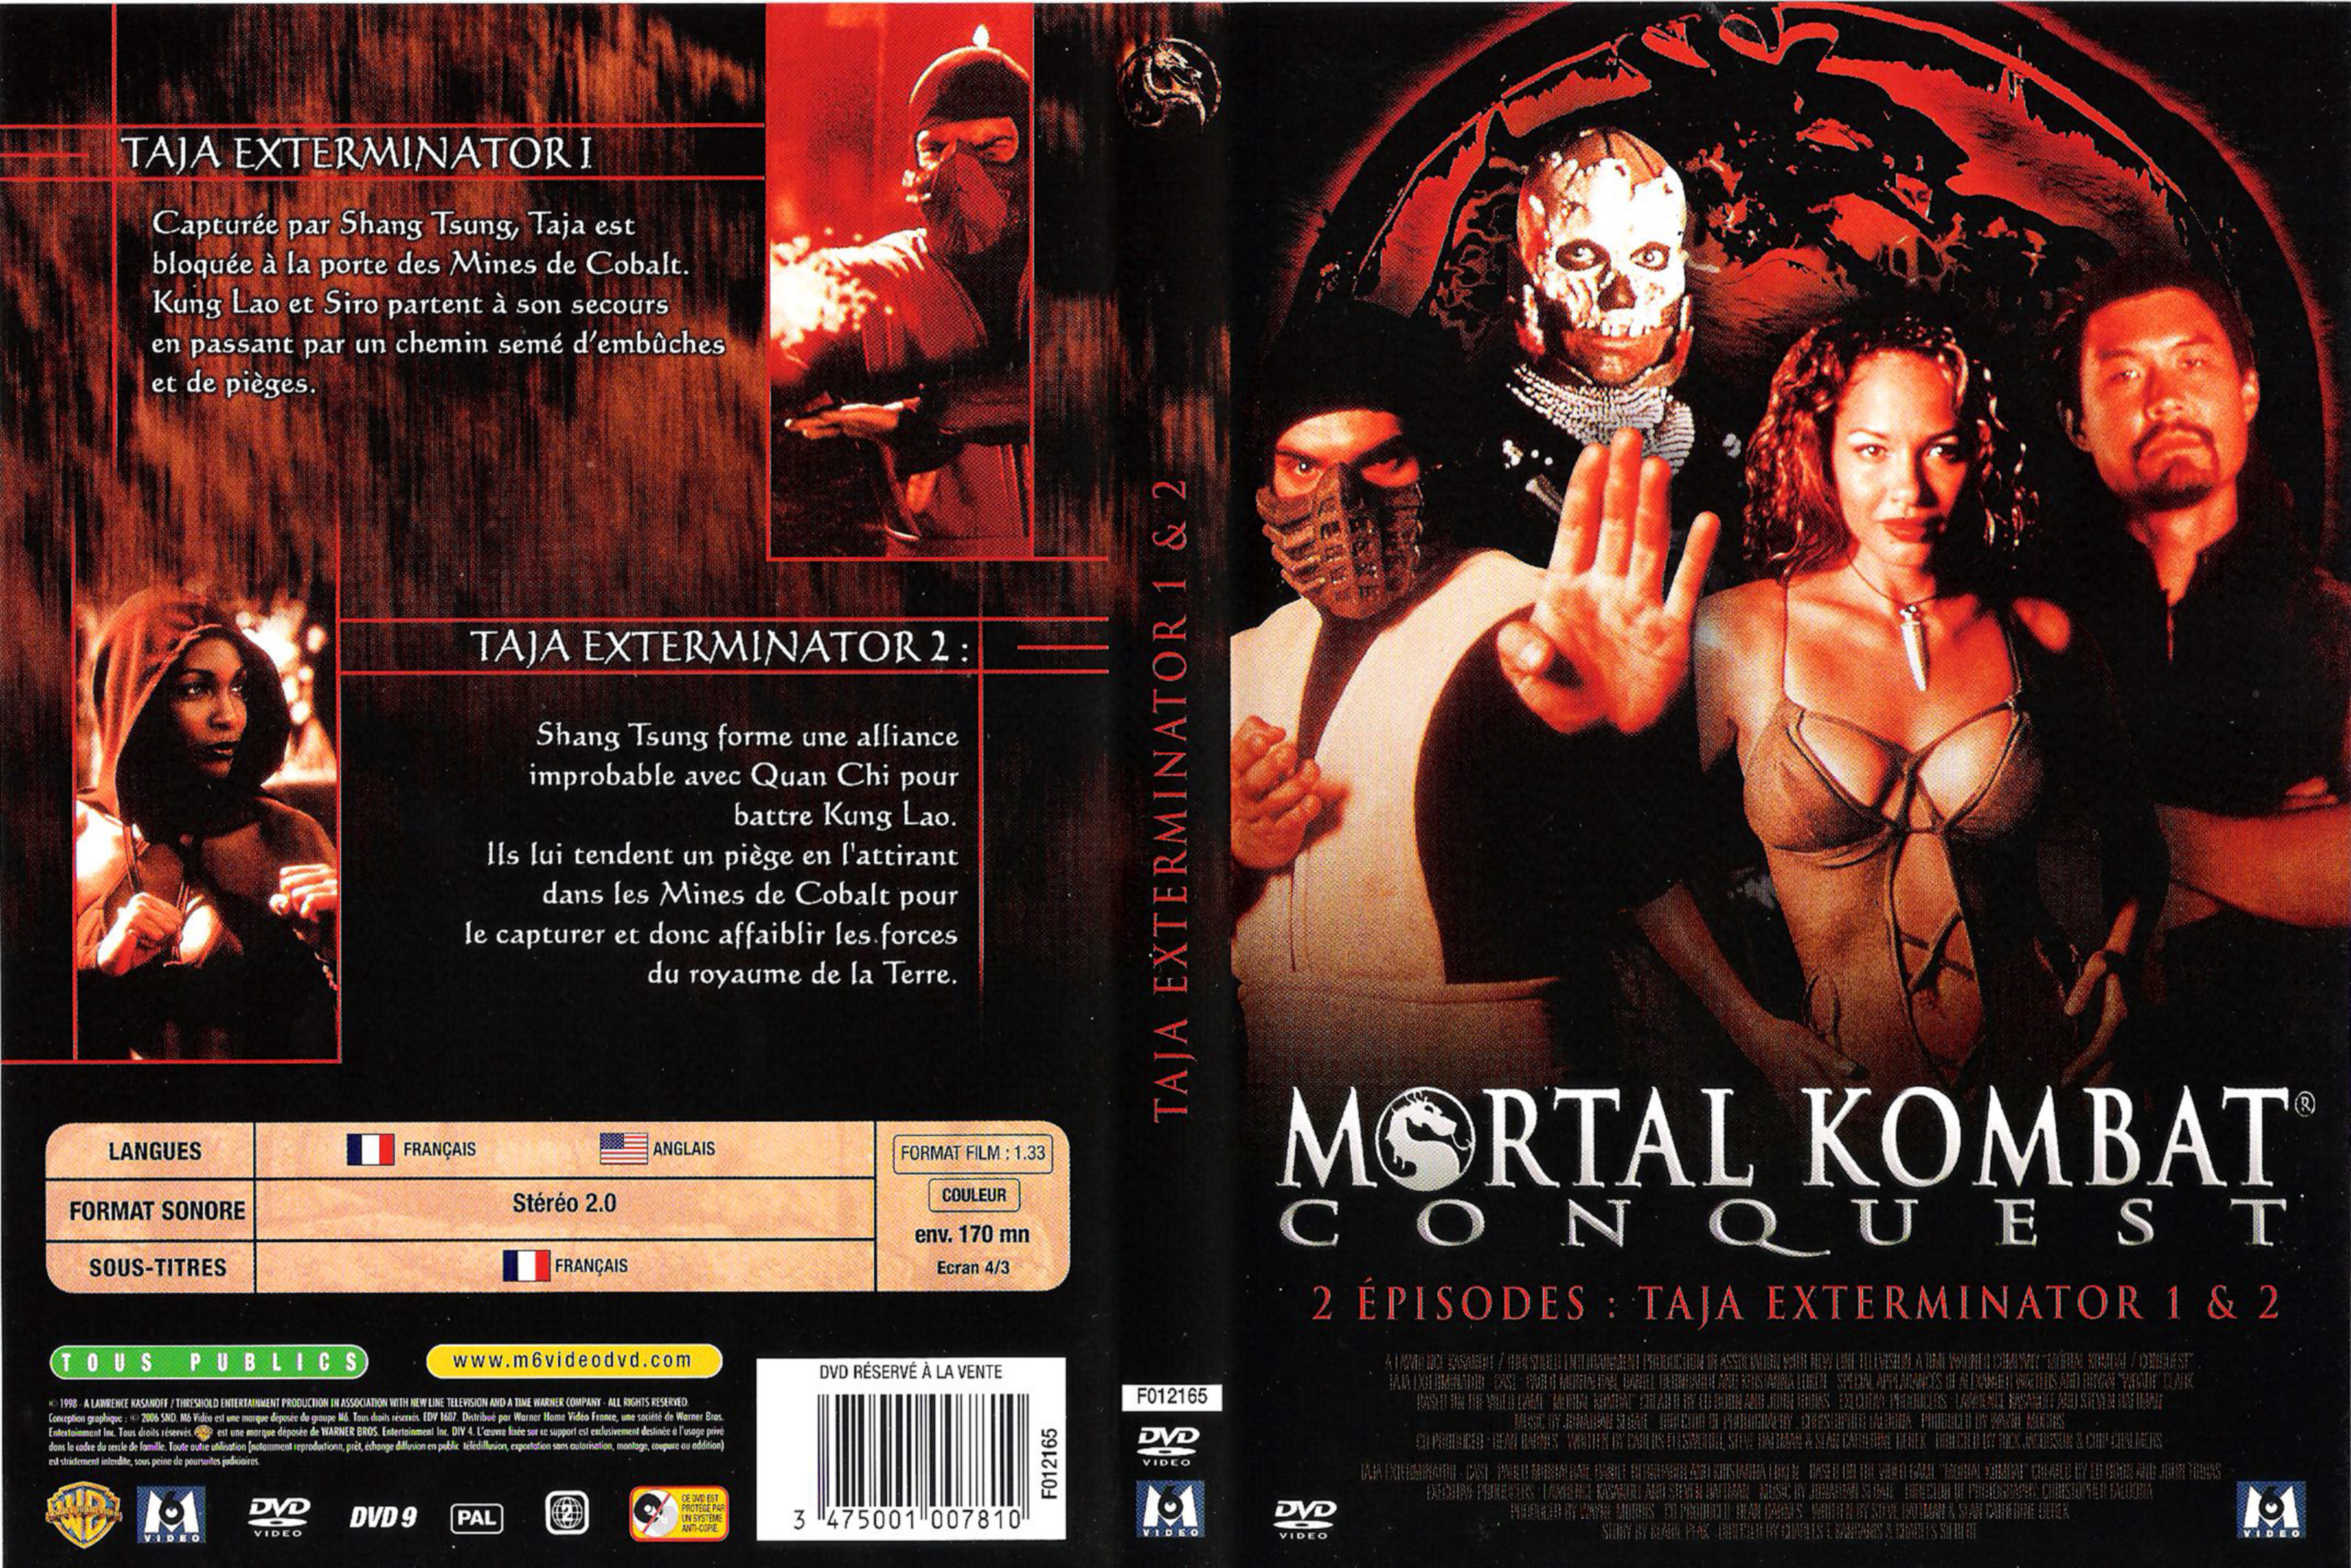 Jaquette DVD Mortal kombat conquest (taja exterminator 1 et 2)